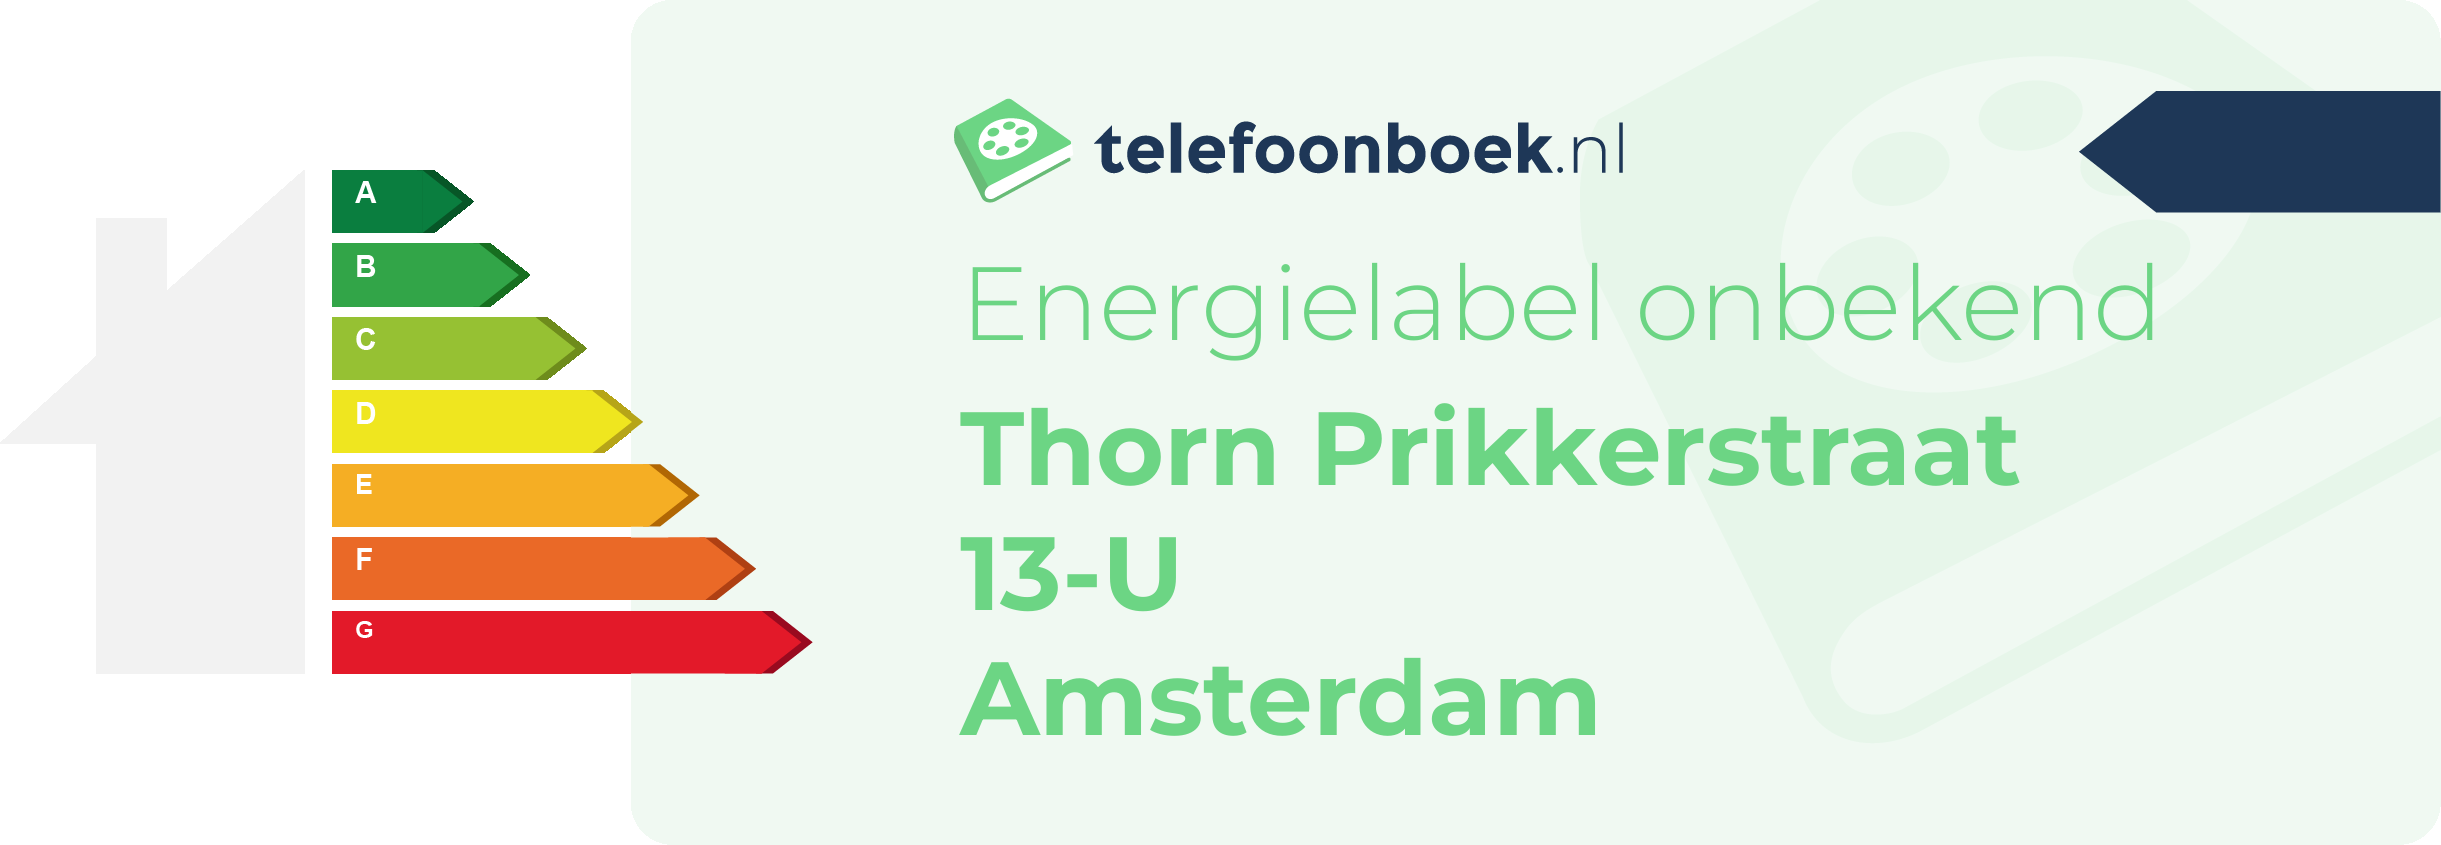 Energielabel Thorn Prikkerstraat 13-U Amsterdam